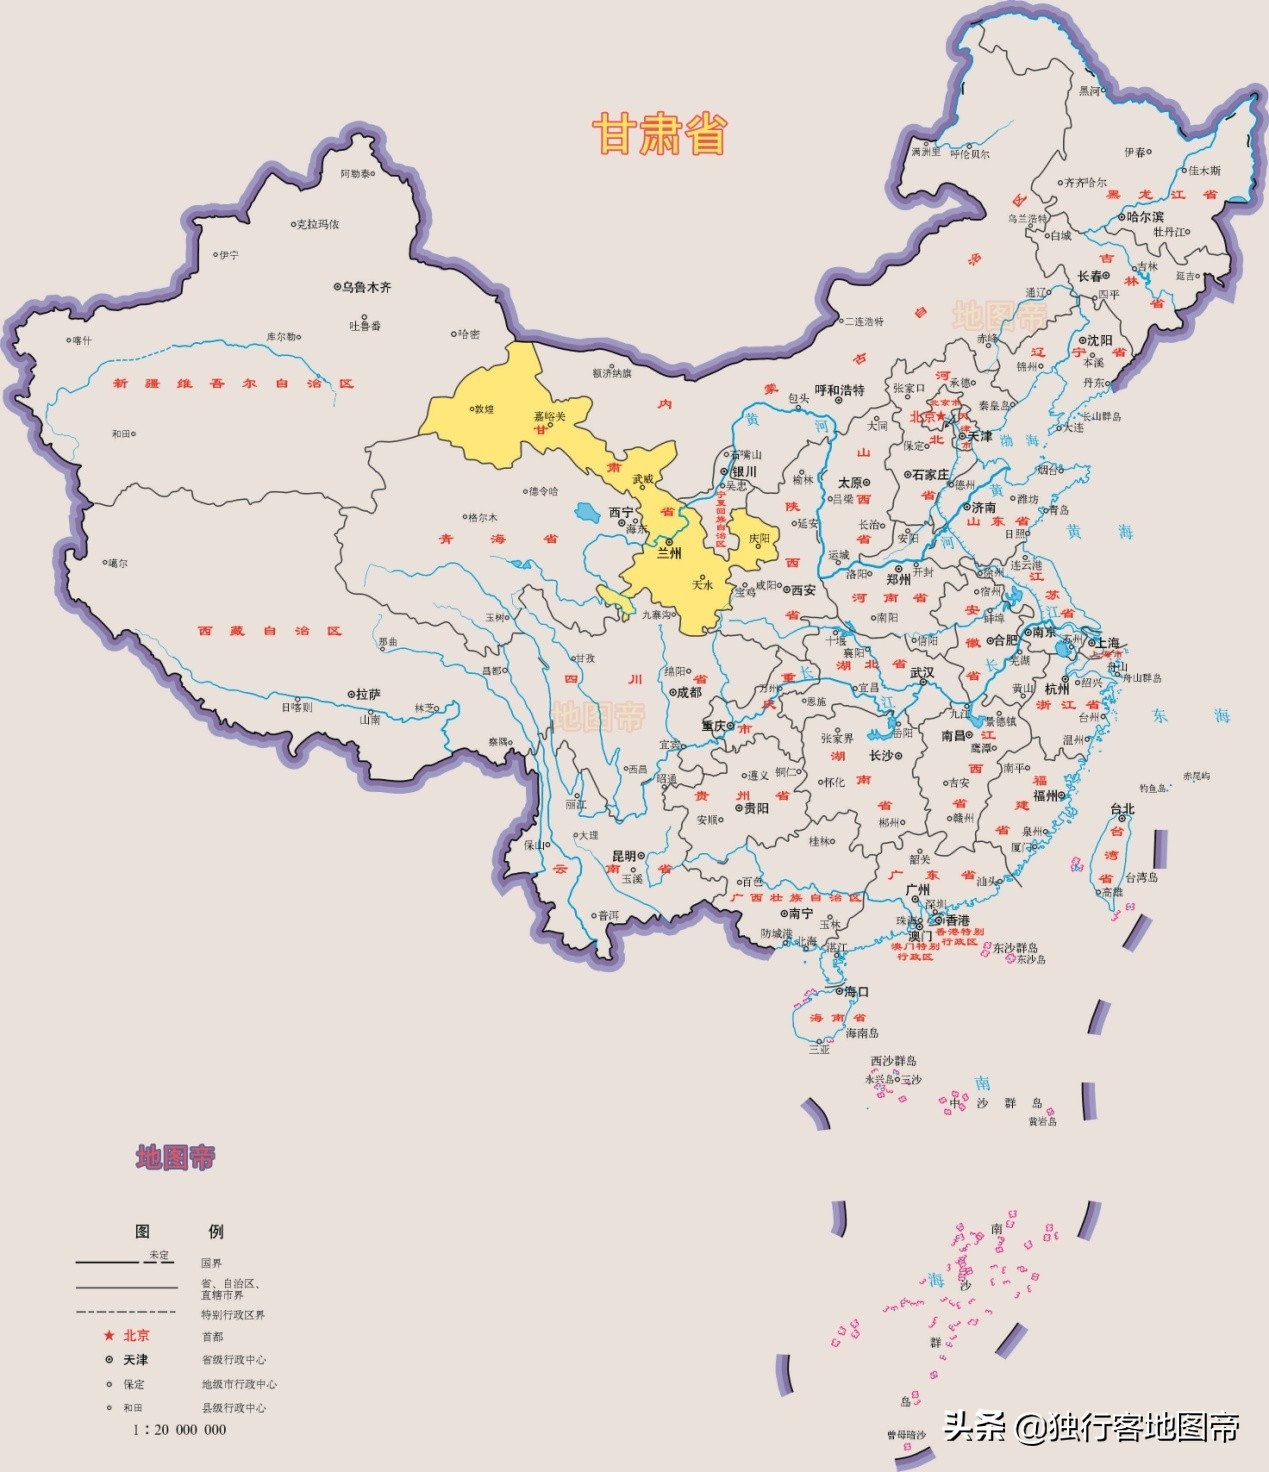 甘肃省是西北省份？其实不全是，有一部分属于南方